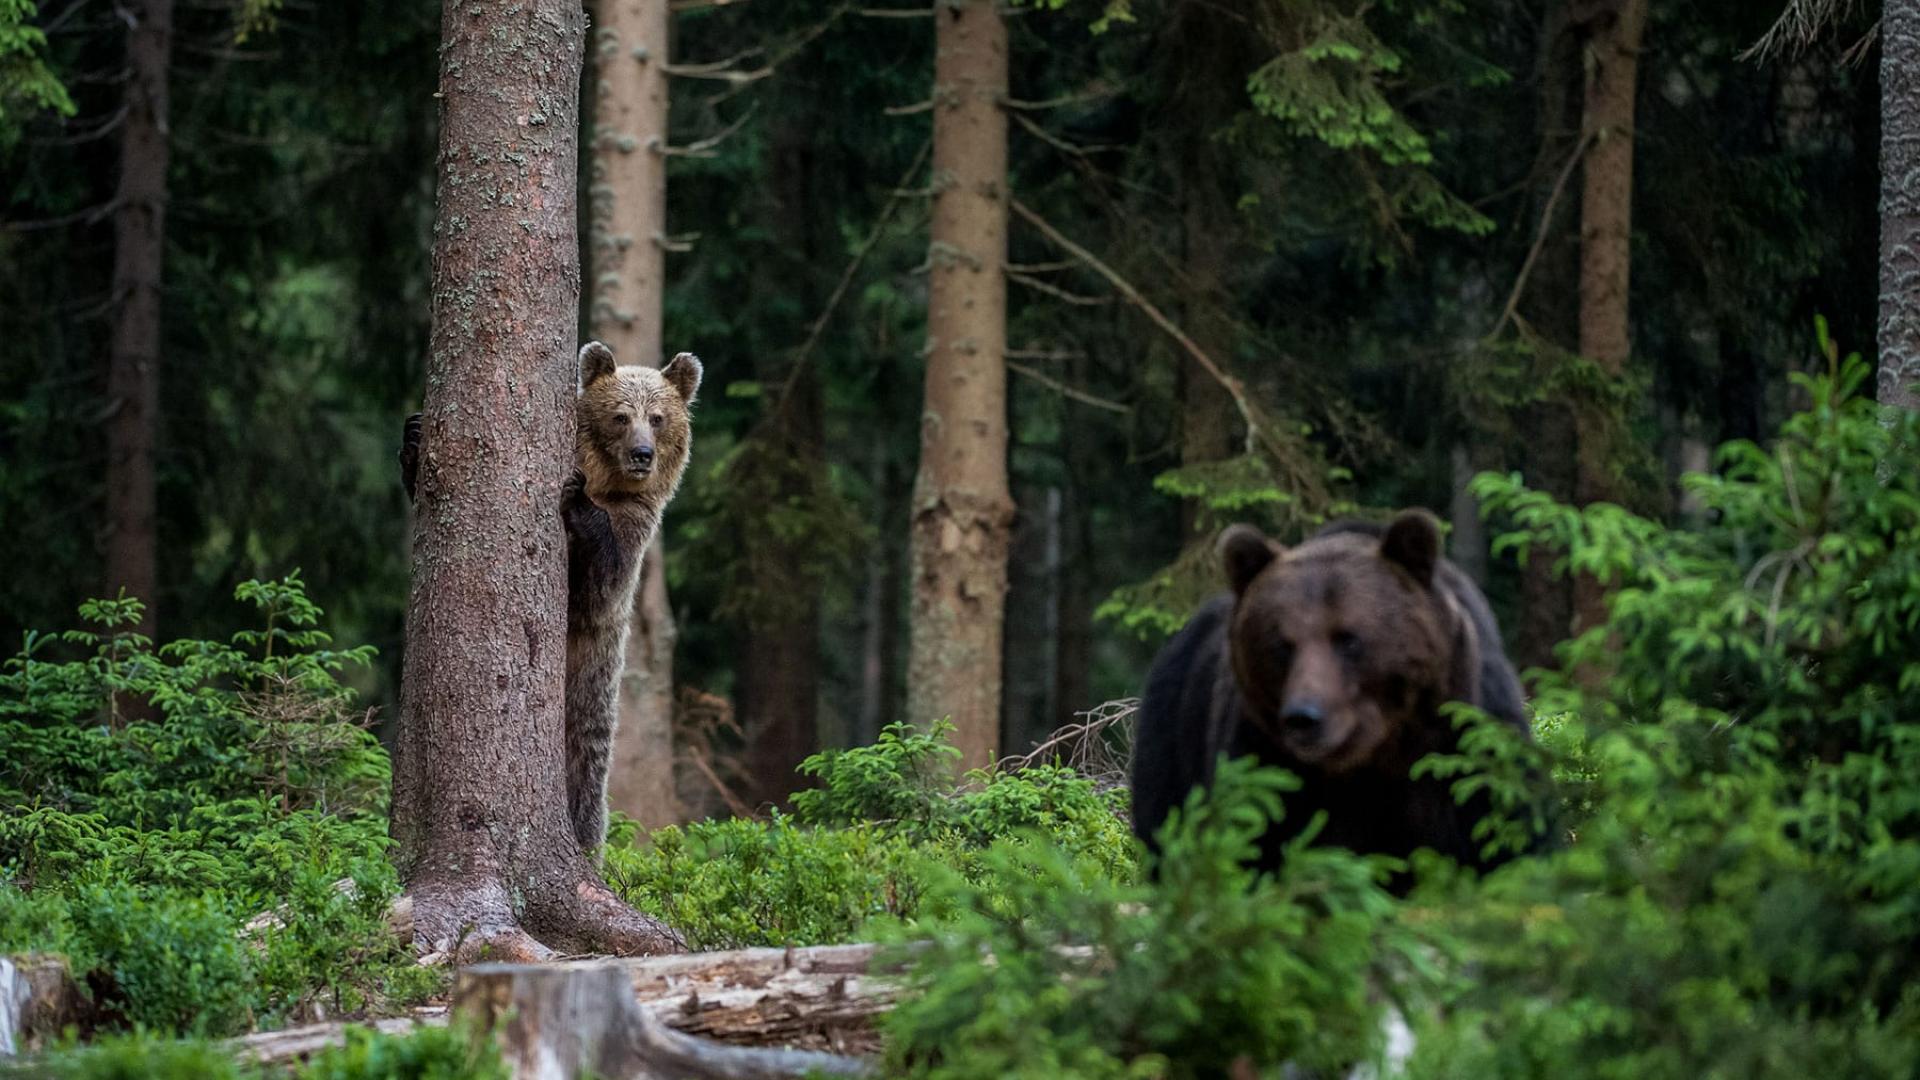 Un ours brun (ursus arctos) se cache derrière un arbre